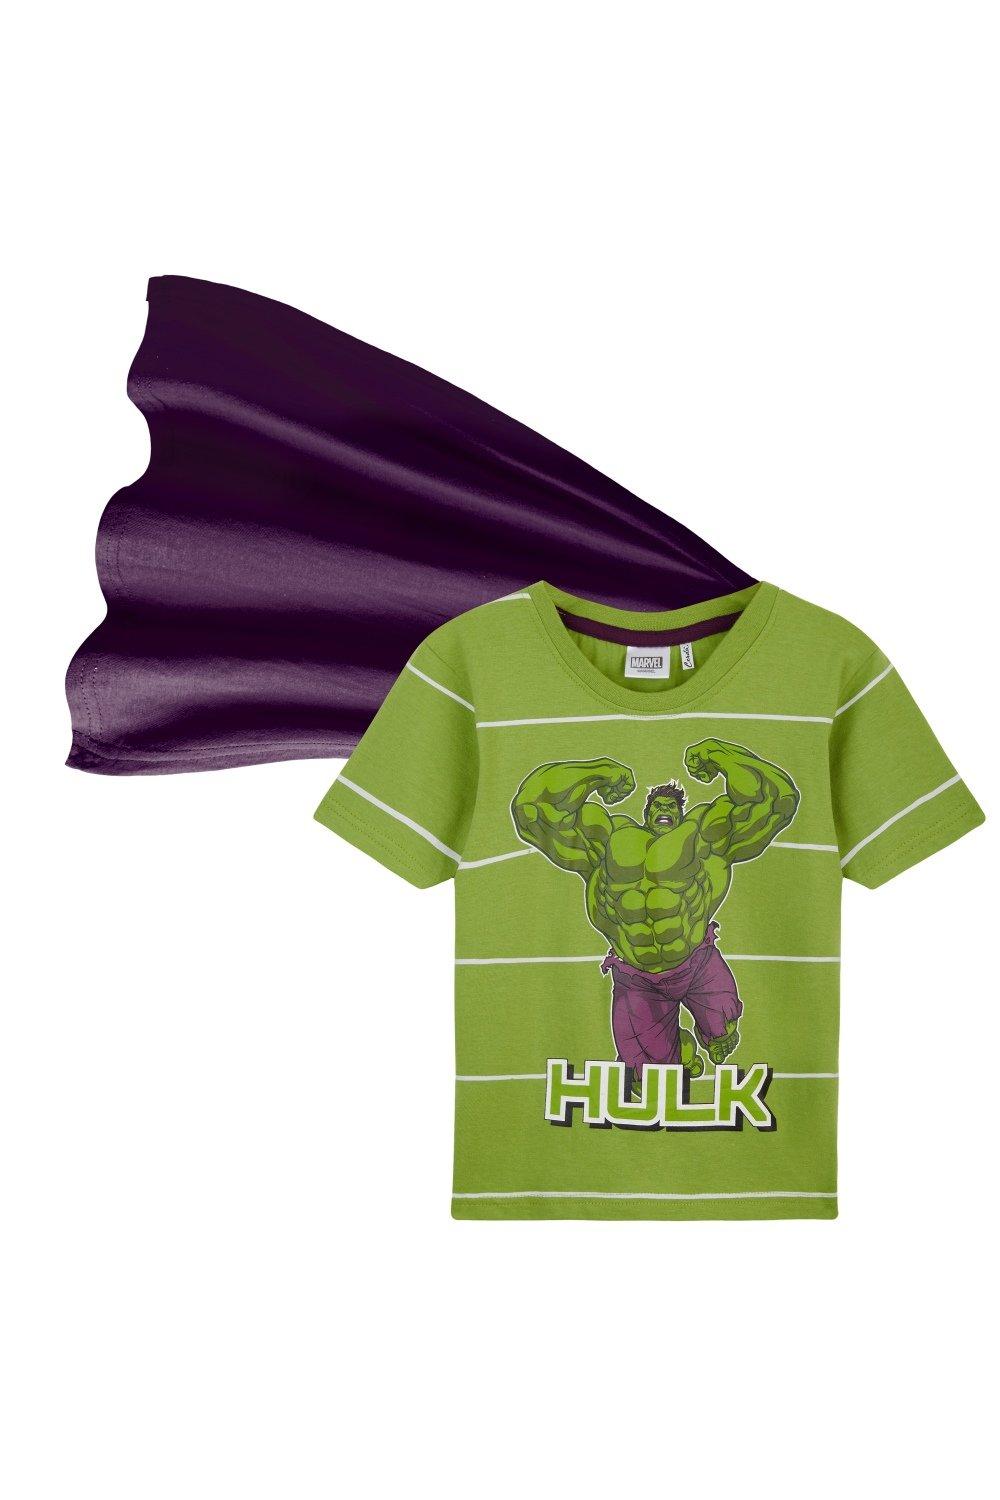 Hulk T-Shirt Short Sleeve